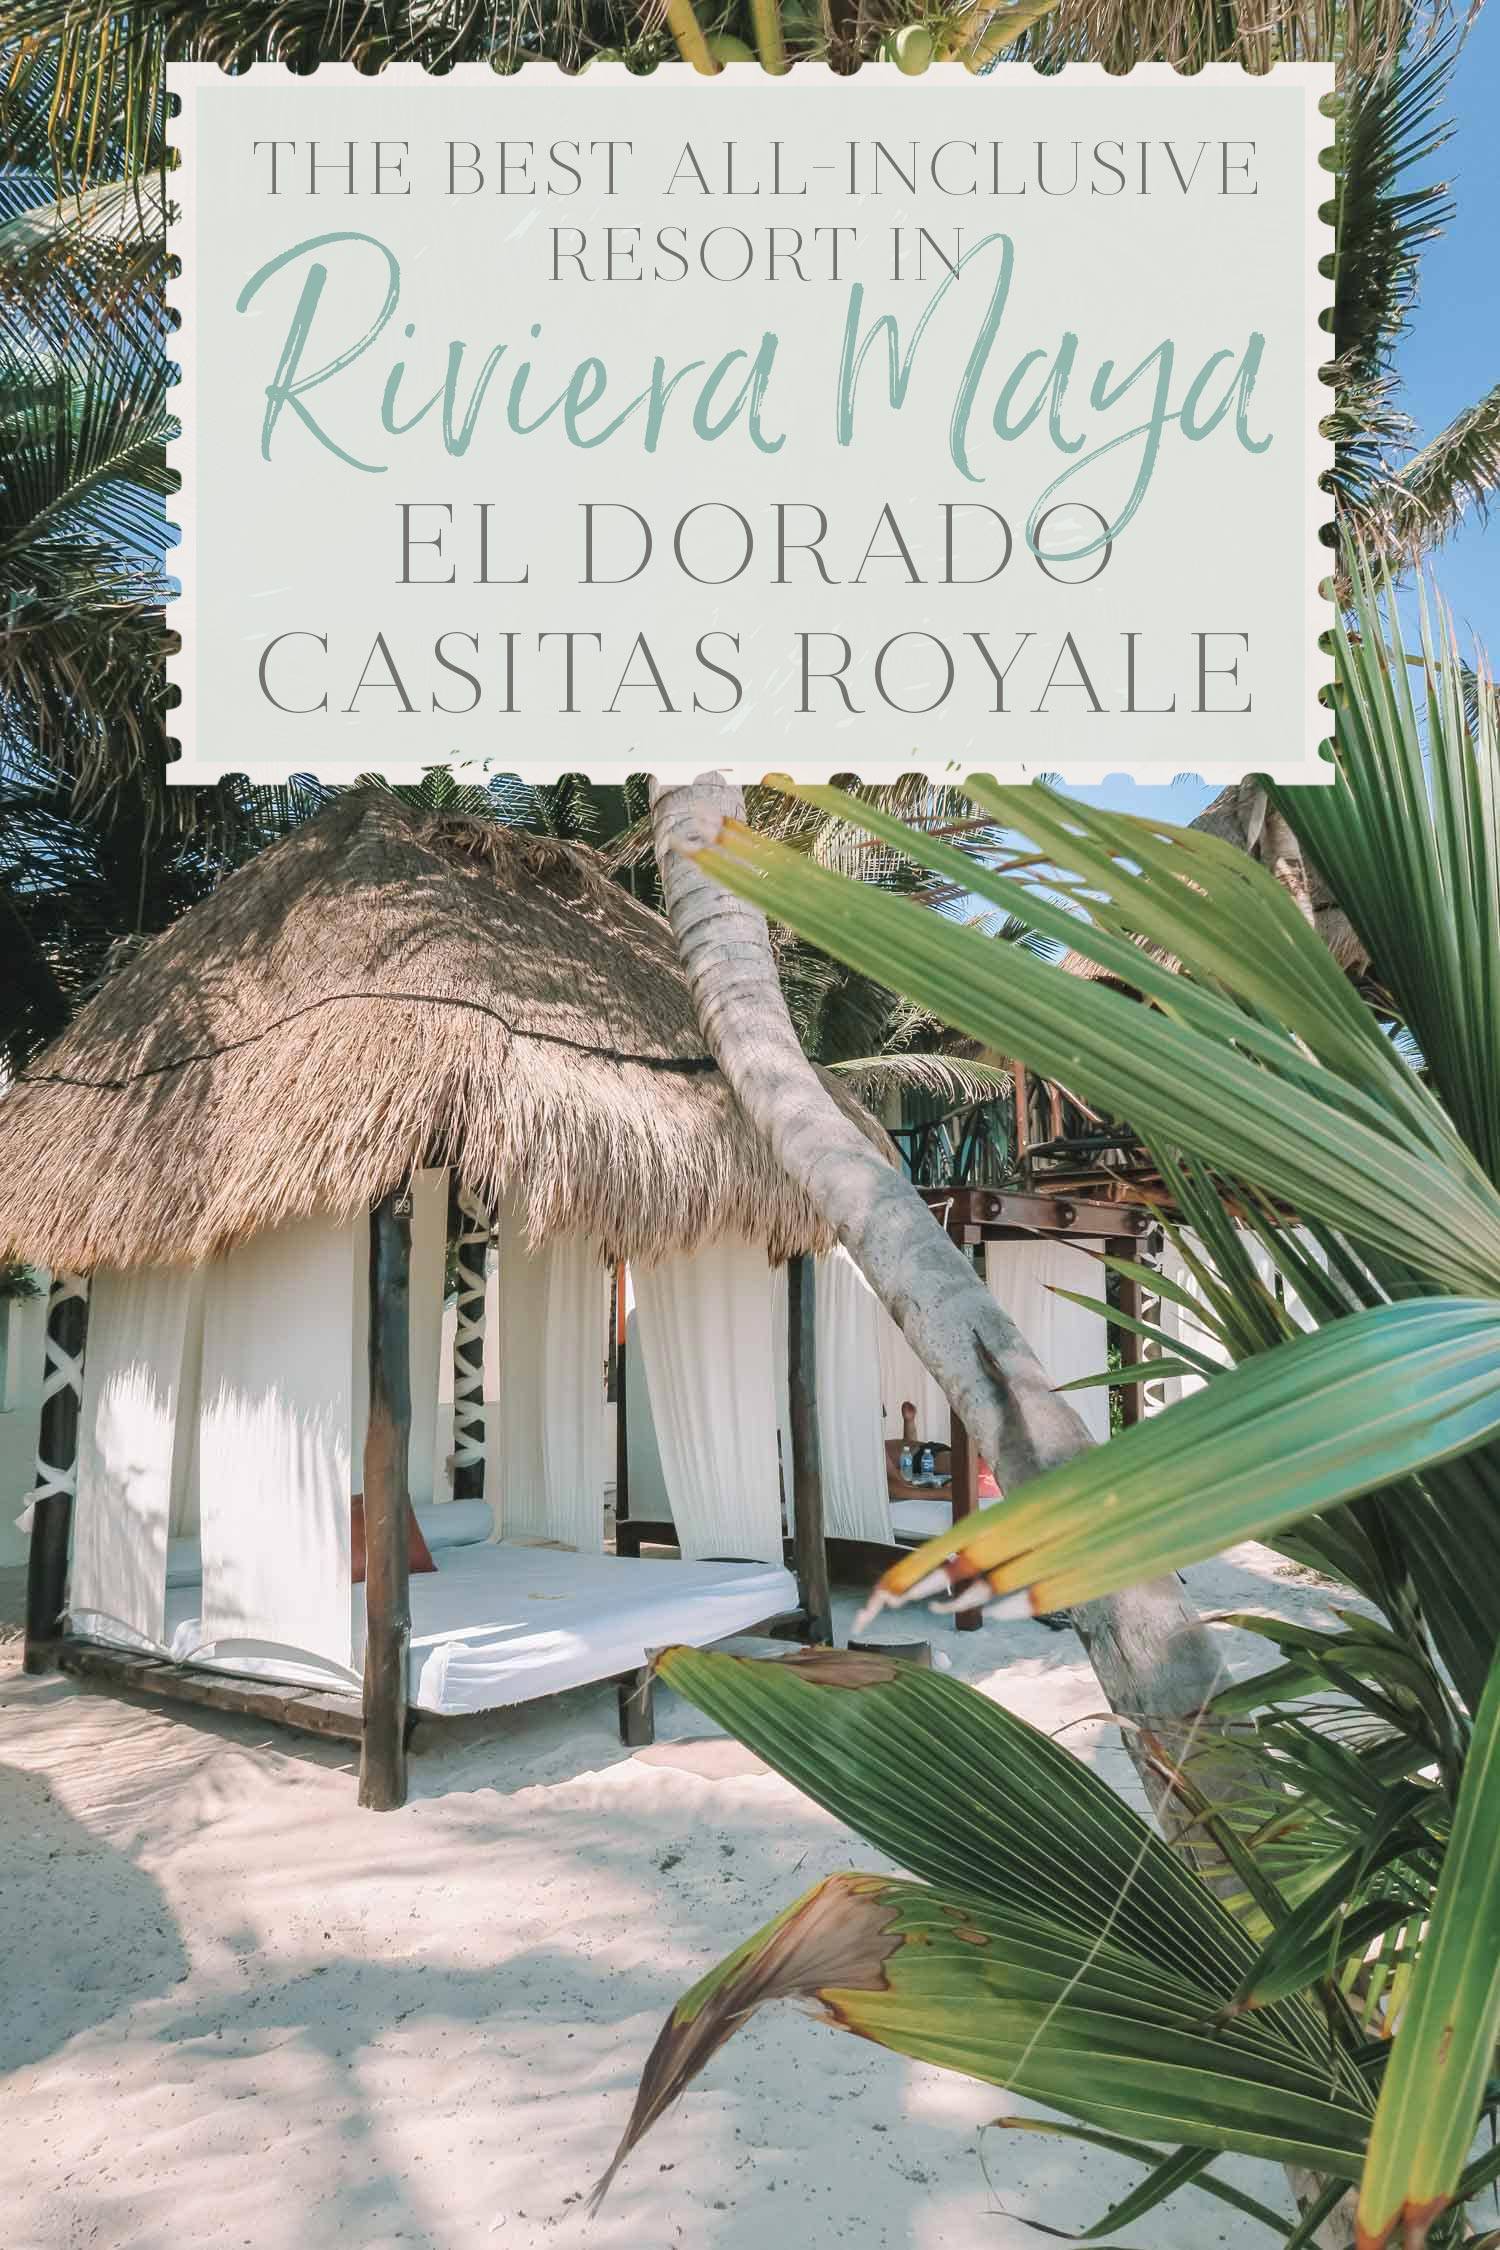 The Best All-Inclusive Resort in Riviera Maya: El Dorado Casitas Royale